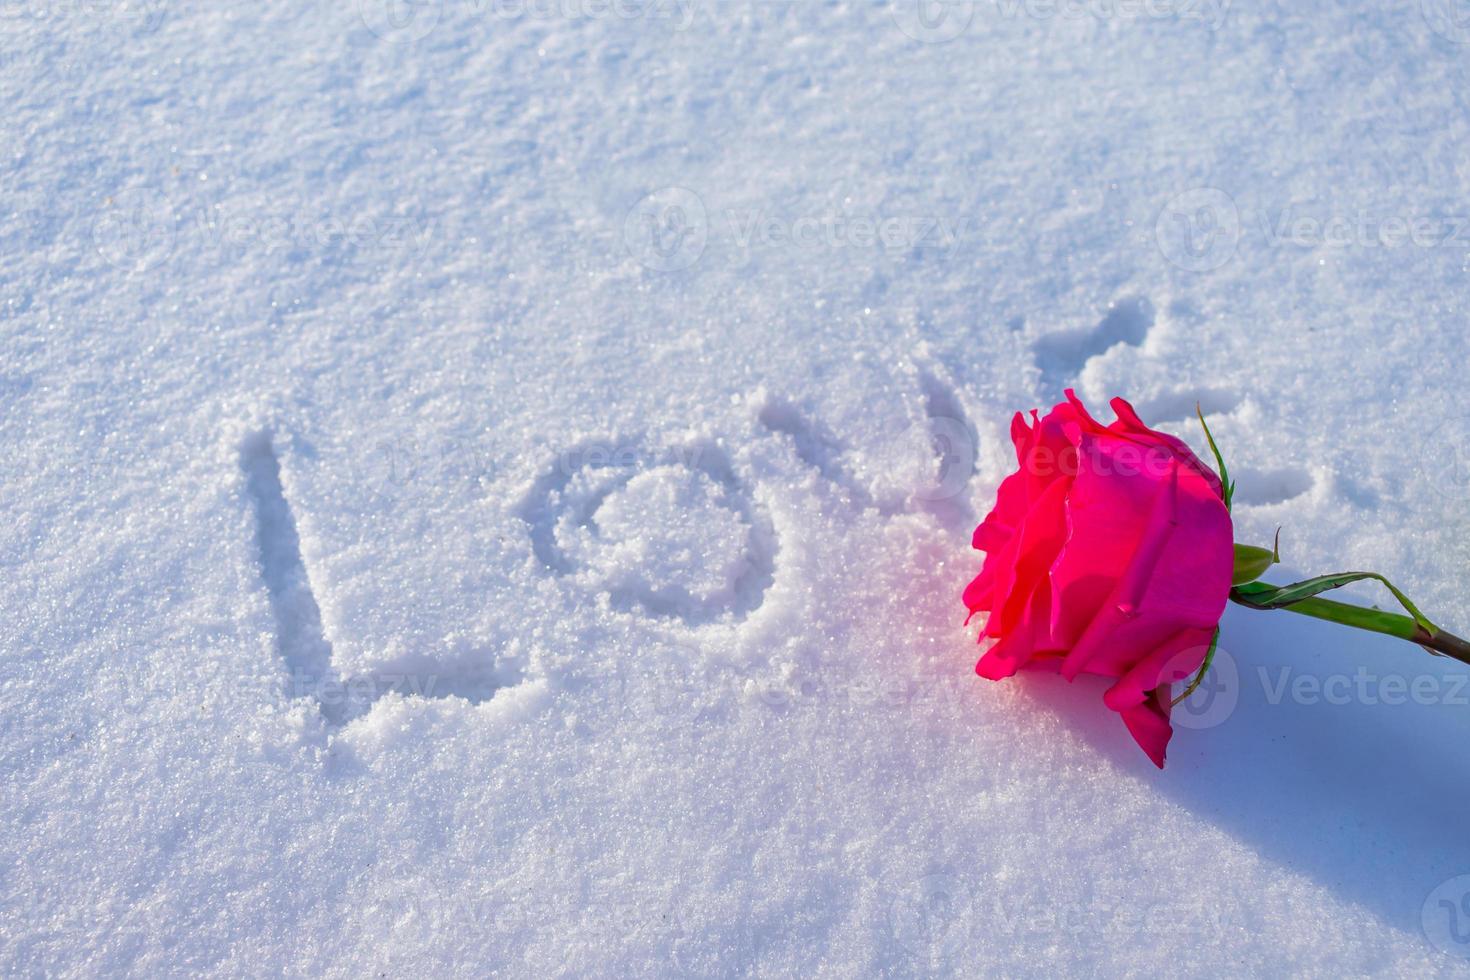 liefdesboodschap in de sneeuw met een roos ernaast foto